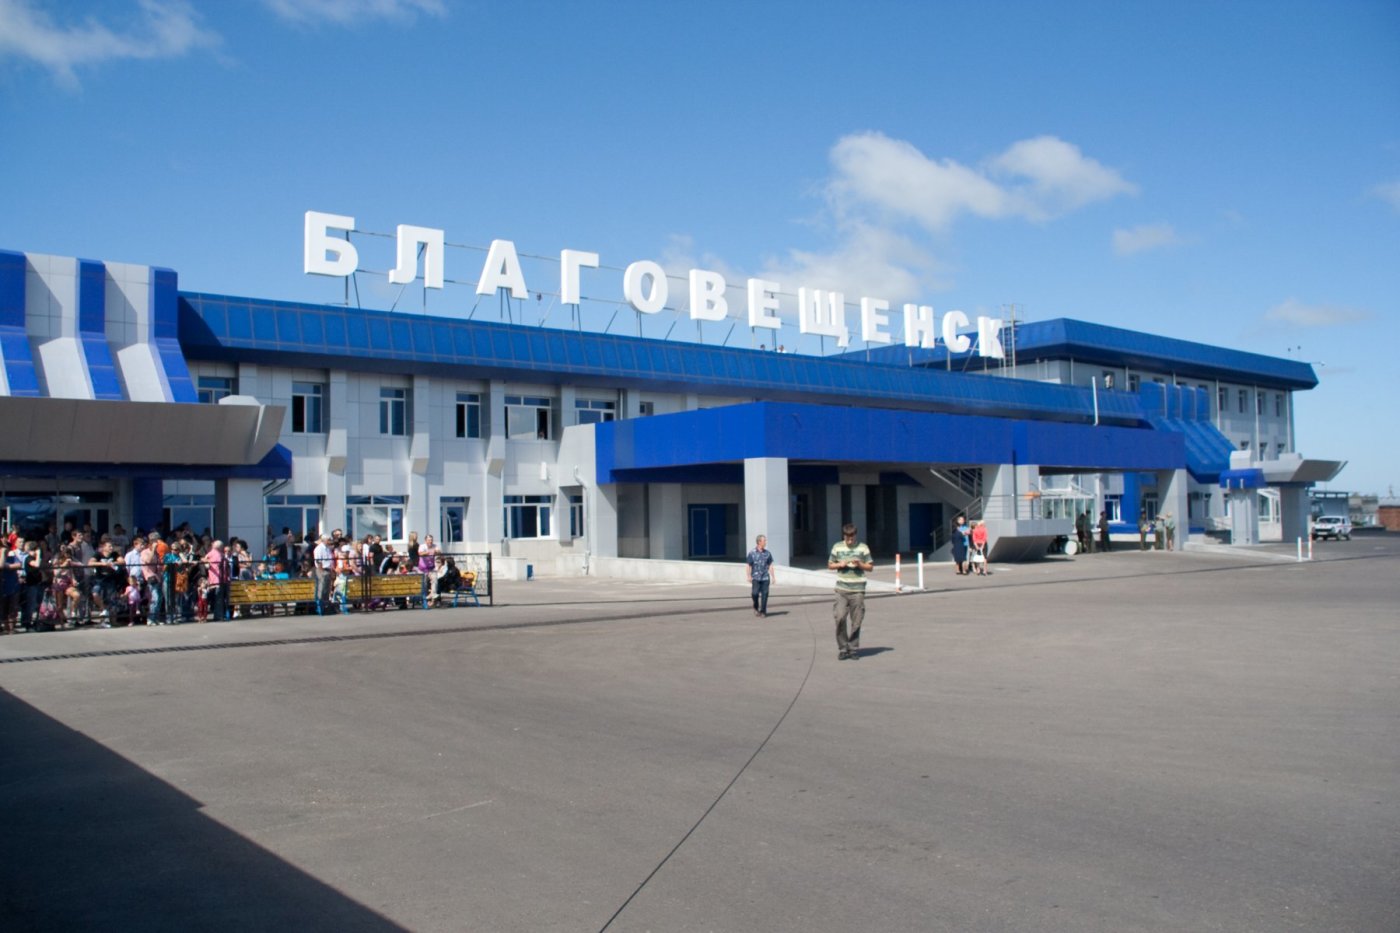 Получено положительное заключение по аэропортовому комплексу “Игнатьево”.